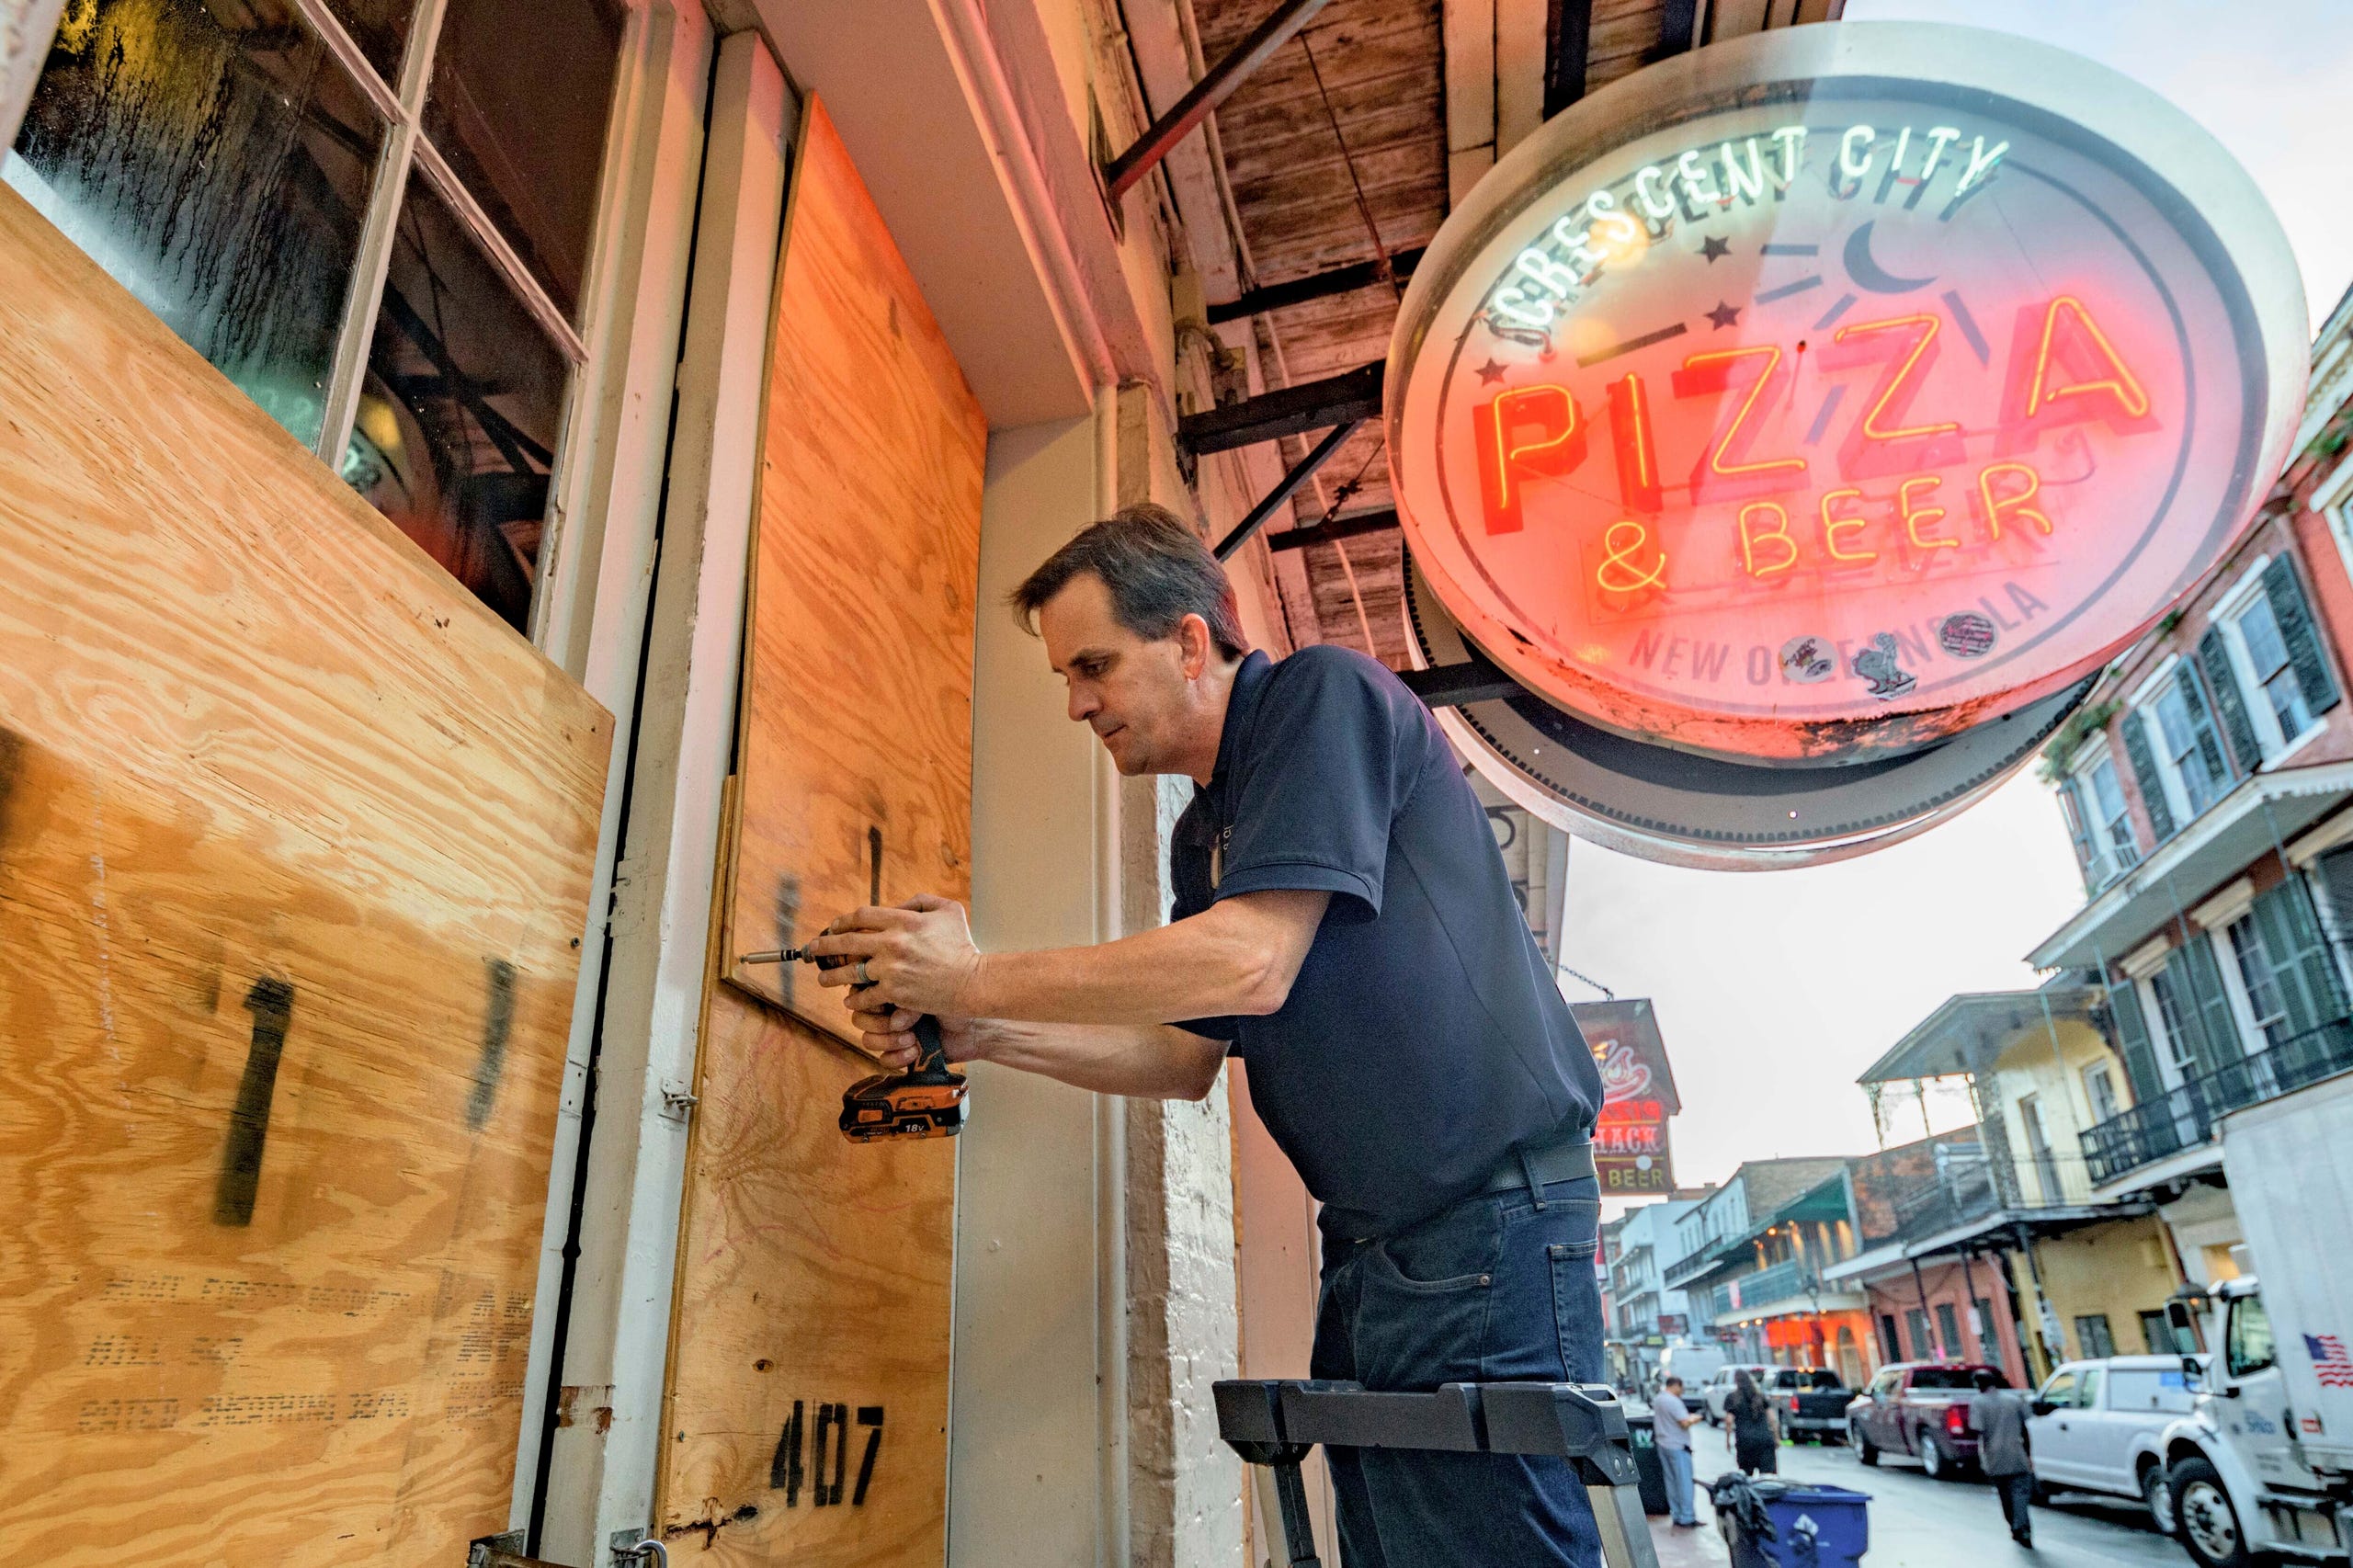 Michael Richard urcă la Crescent City Pizza pe Bourbon Street, în cartierul francez din New Orleans, înainte de prinderea uraganului Ida pe 28 august 2021.